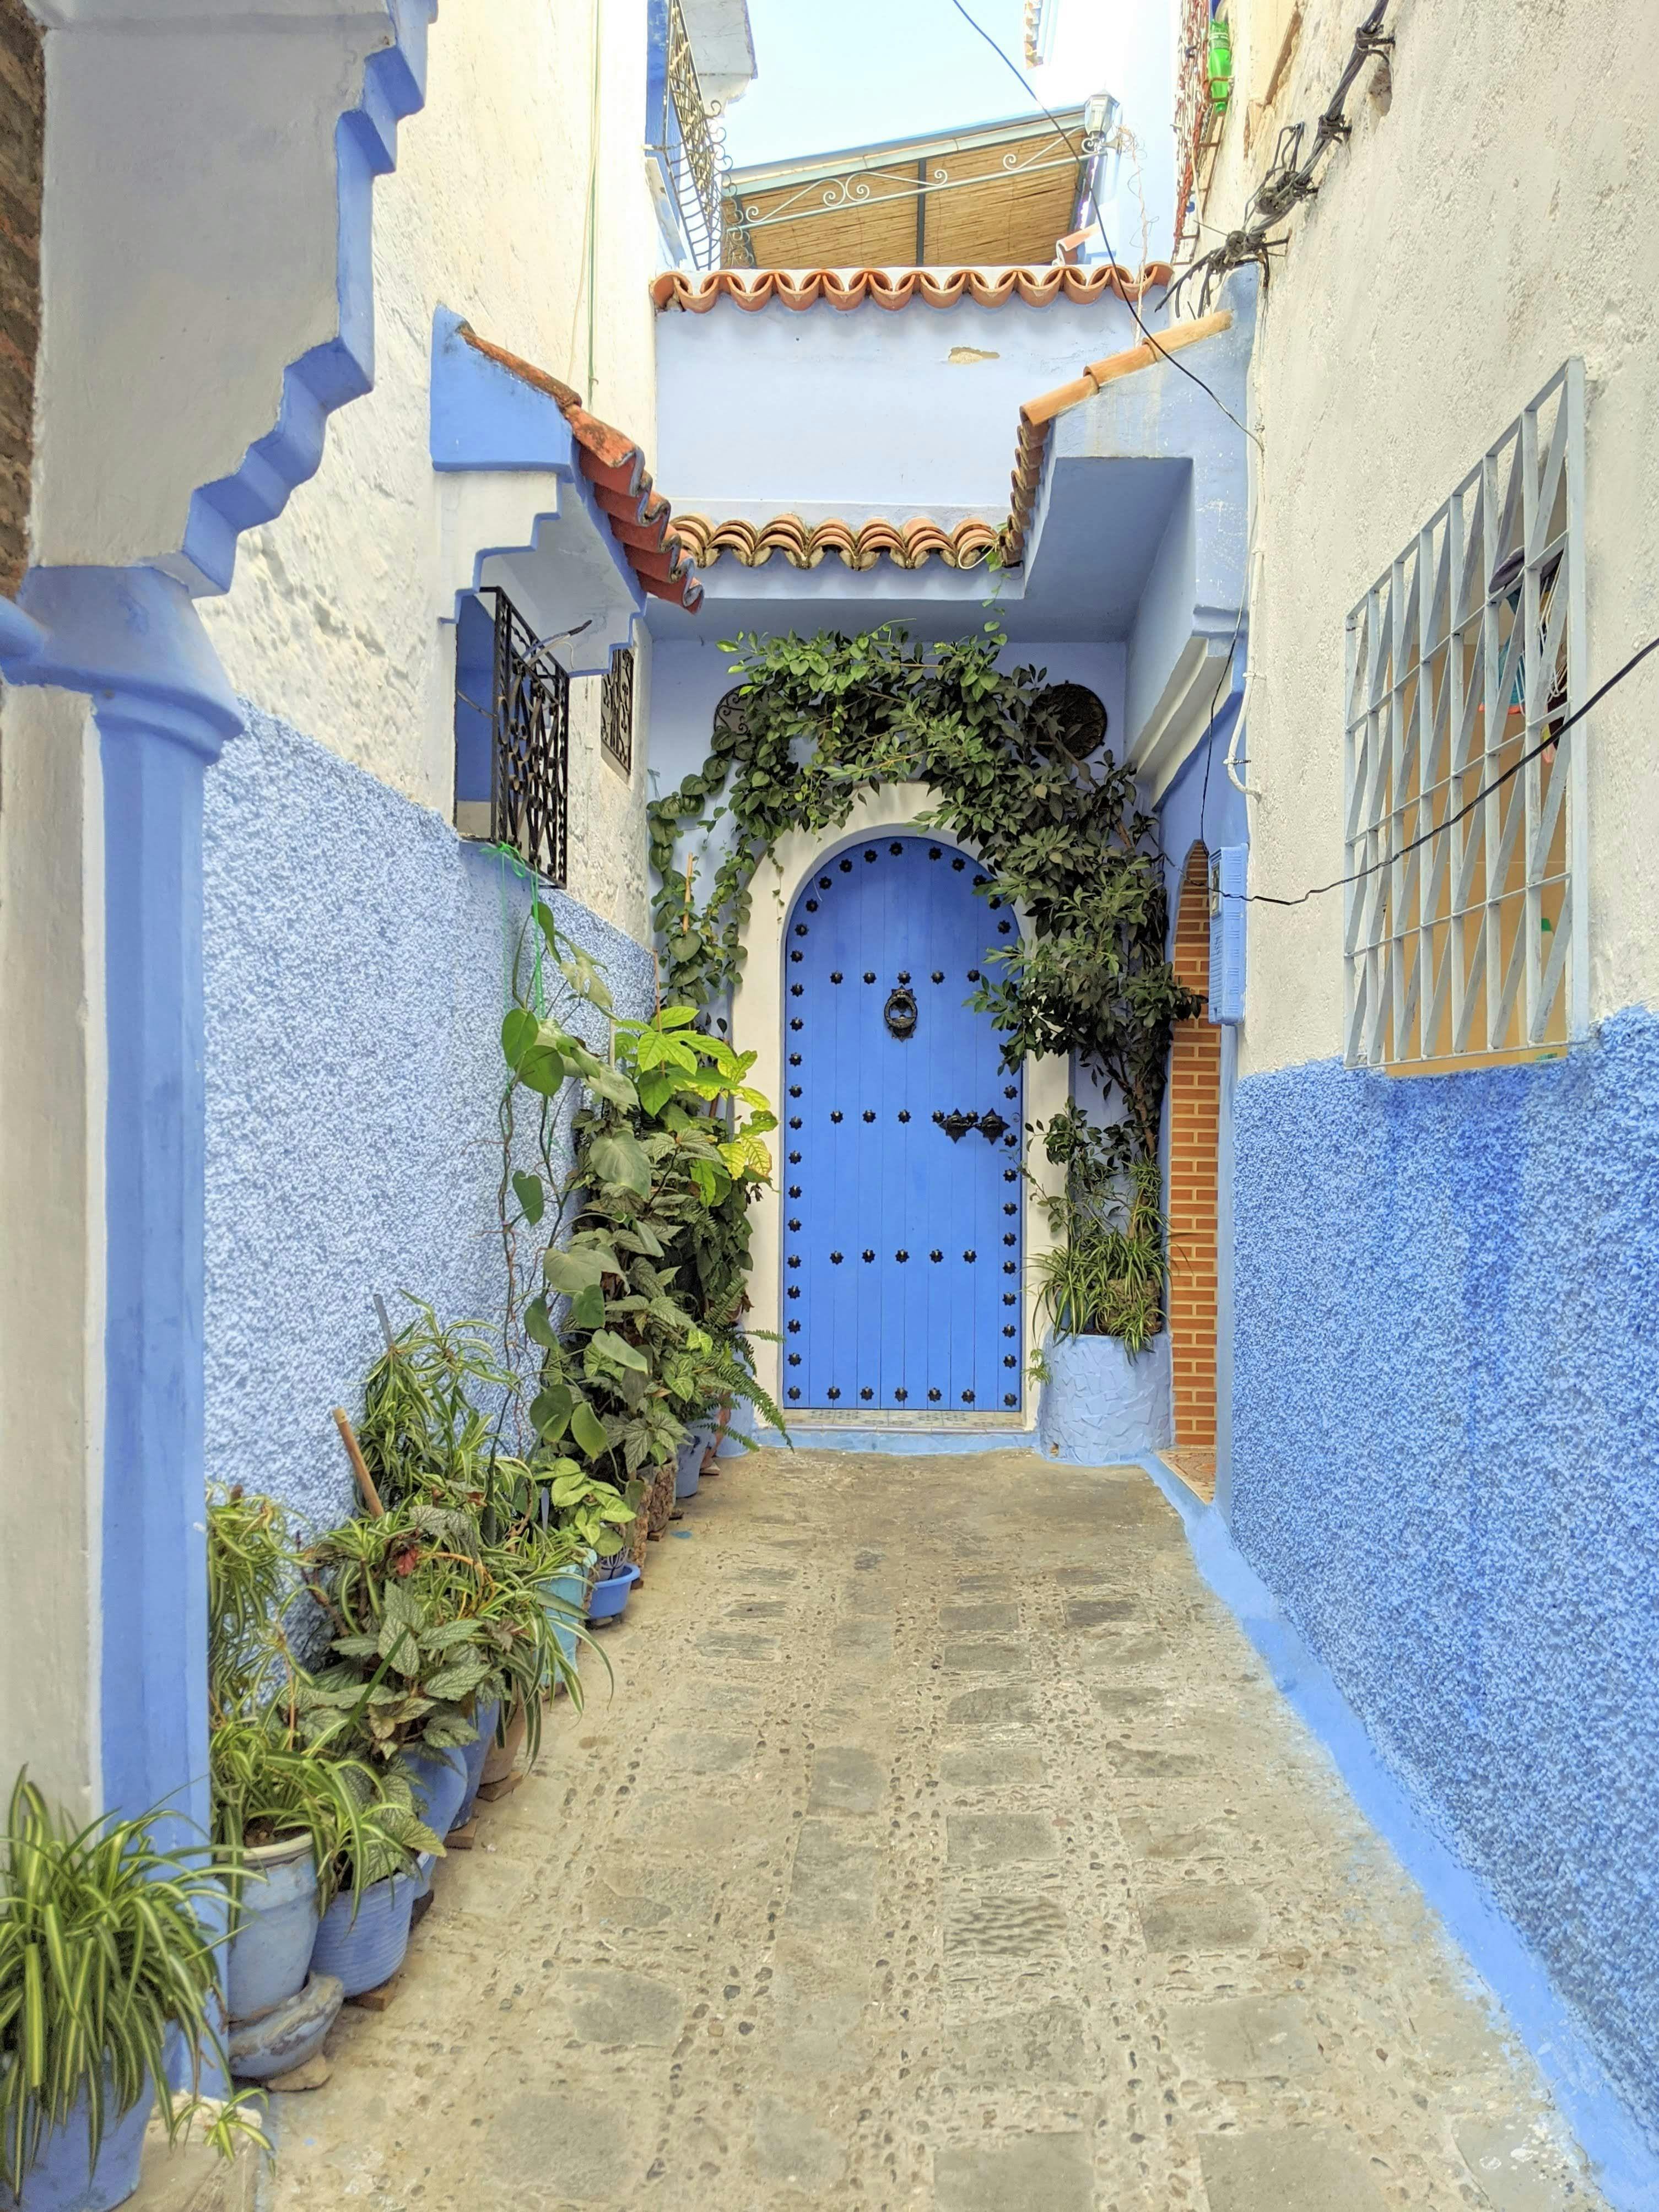 Blue door in Chefchaouen, Morocco.